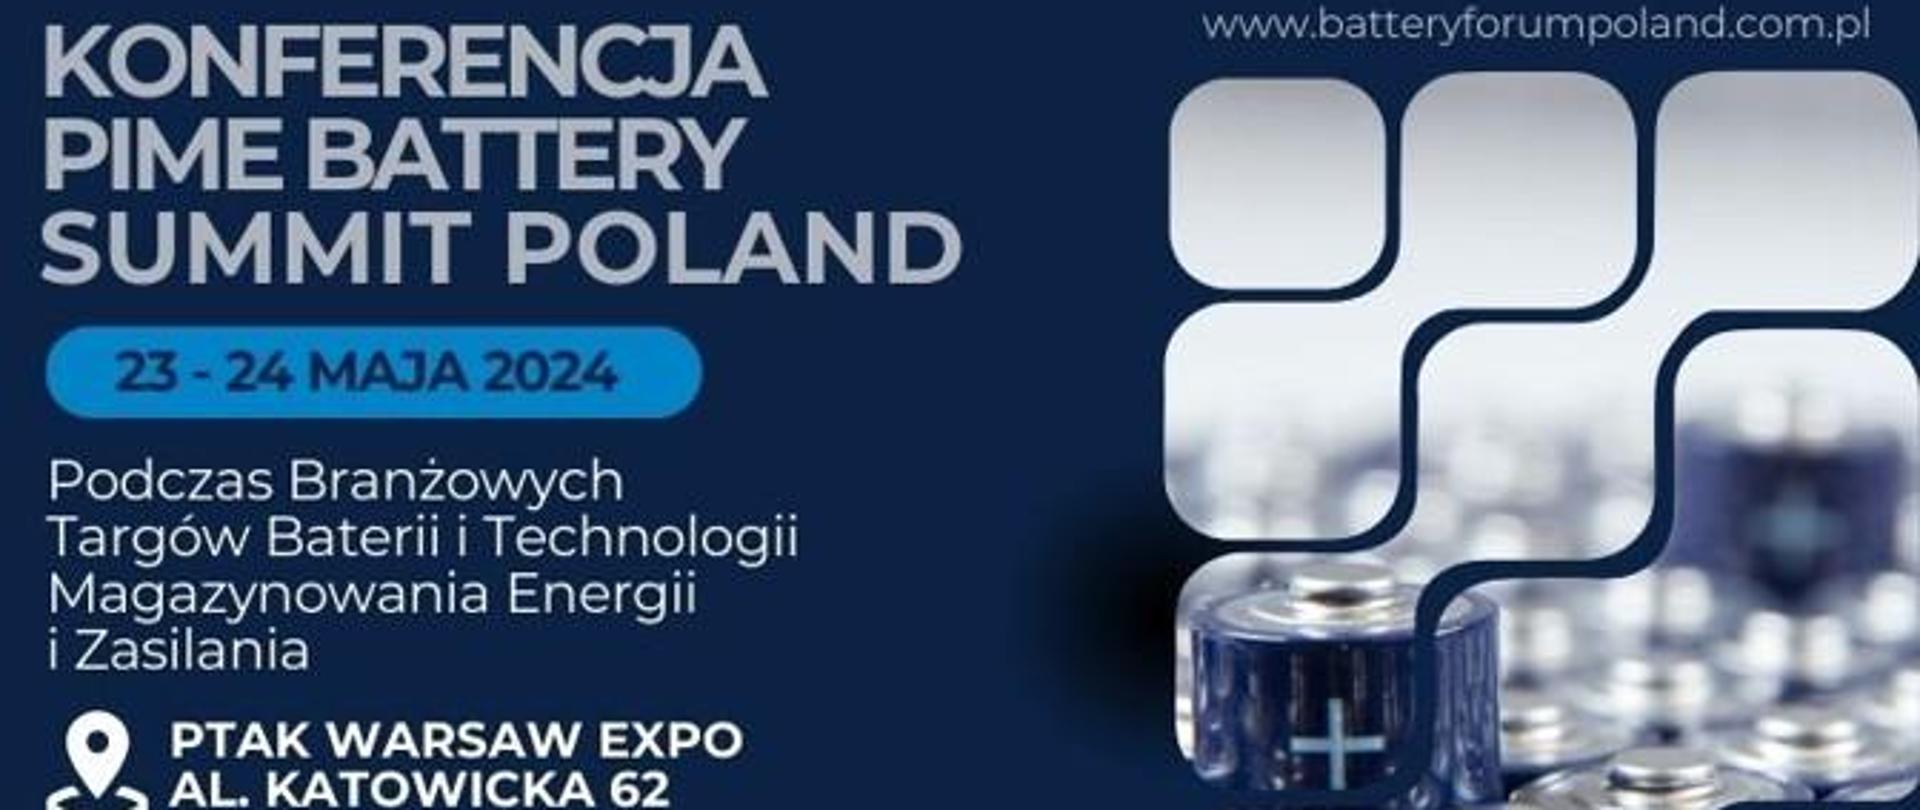 Plakat informacyjno-promocyjny oraz informacja o wydarzeniu Konferencja PIME Battery Summit Poland, odbywającym się w dniach 23-25 maja 2024 roku